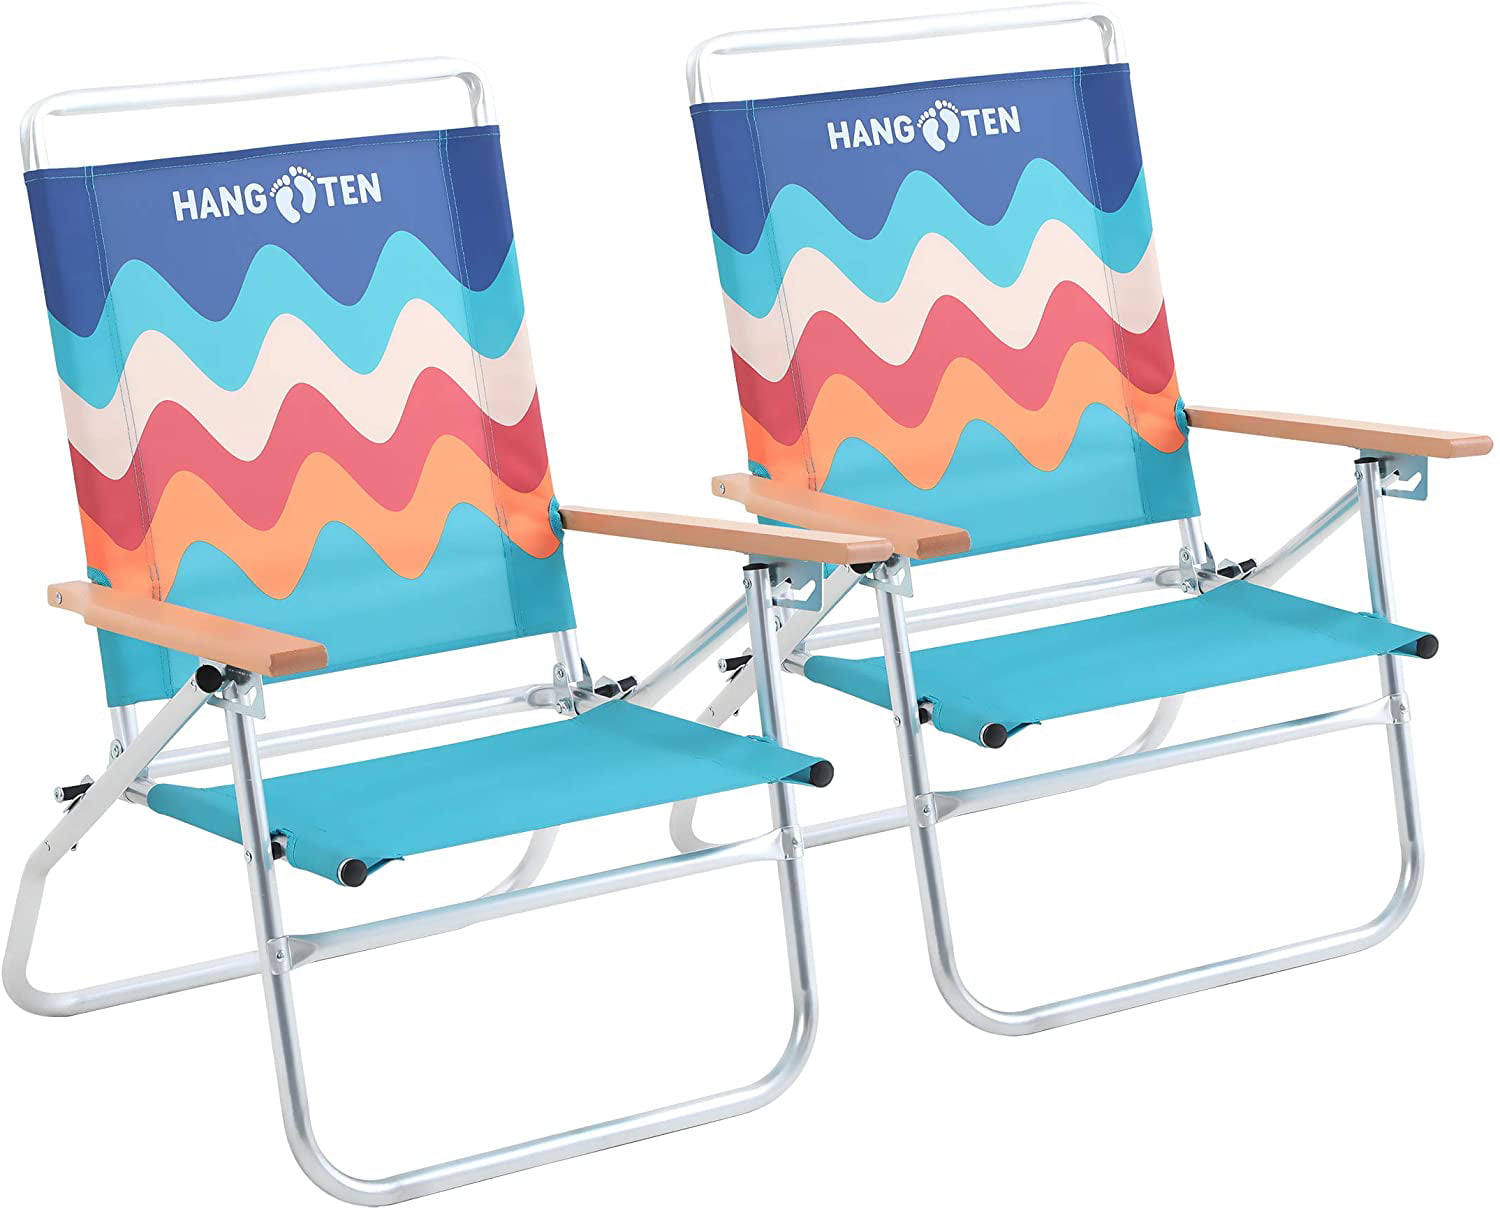 High beach chairs